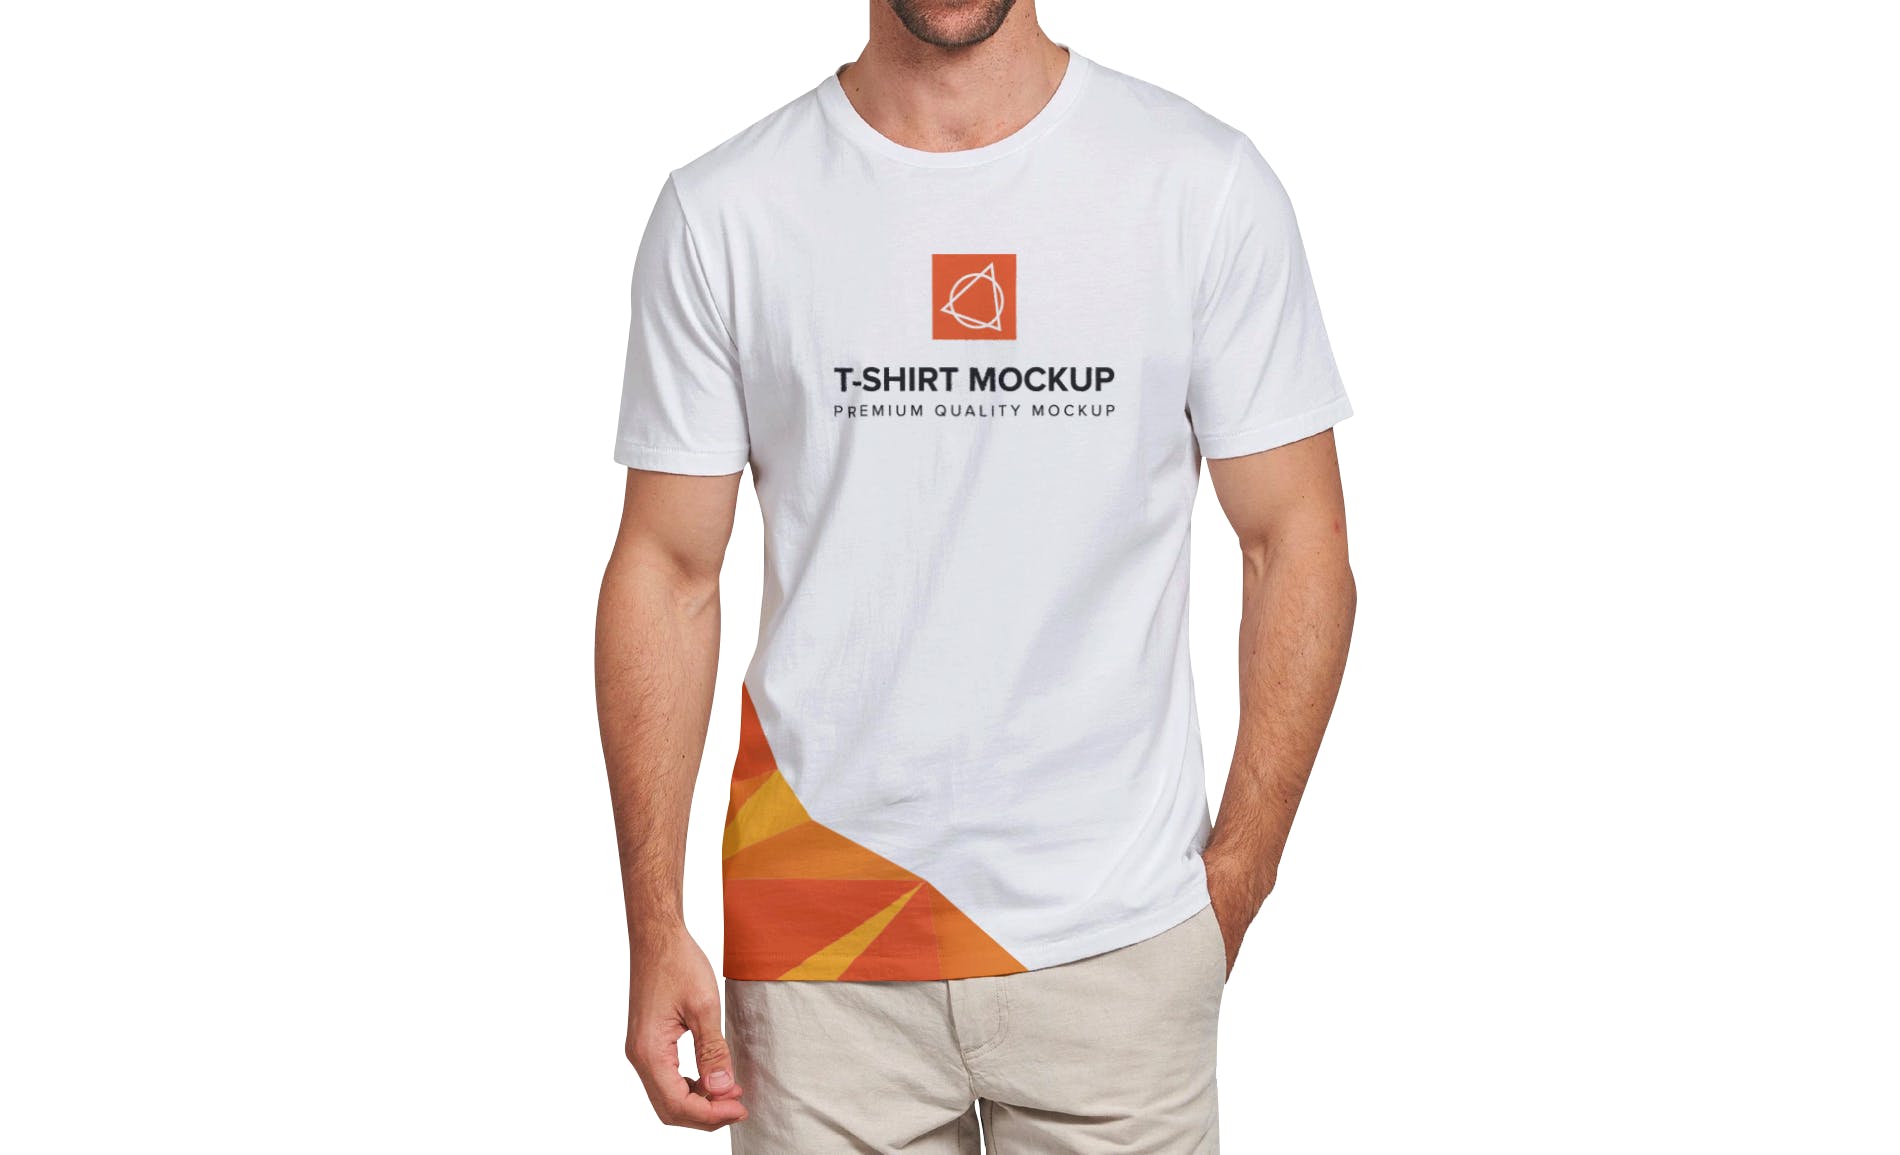 男士T恤印花设计效果图样机第一素材精选v03 T-shirt Mockup Vol 03插图(4)